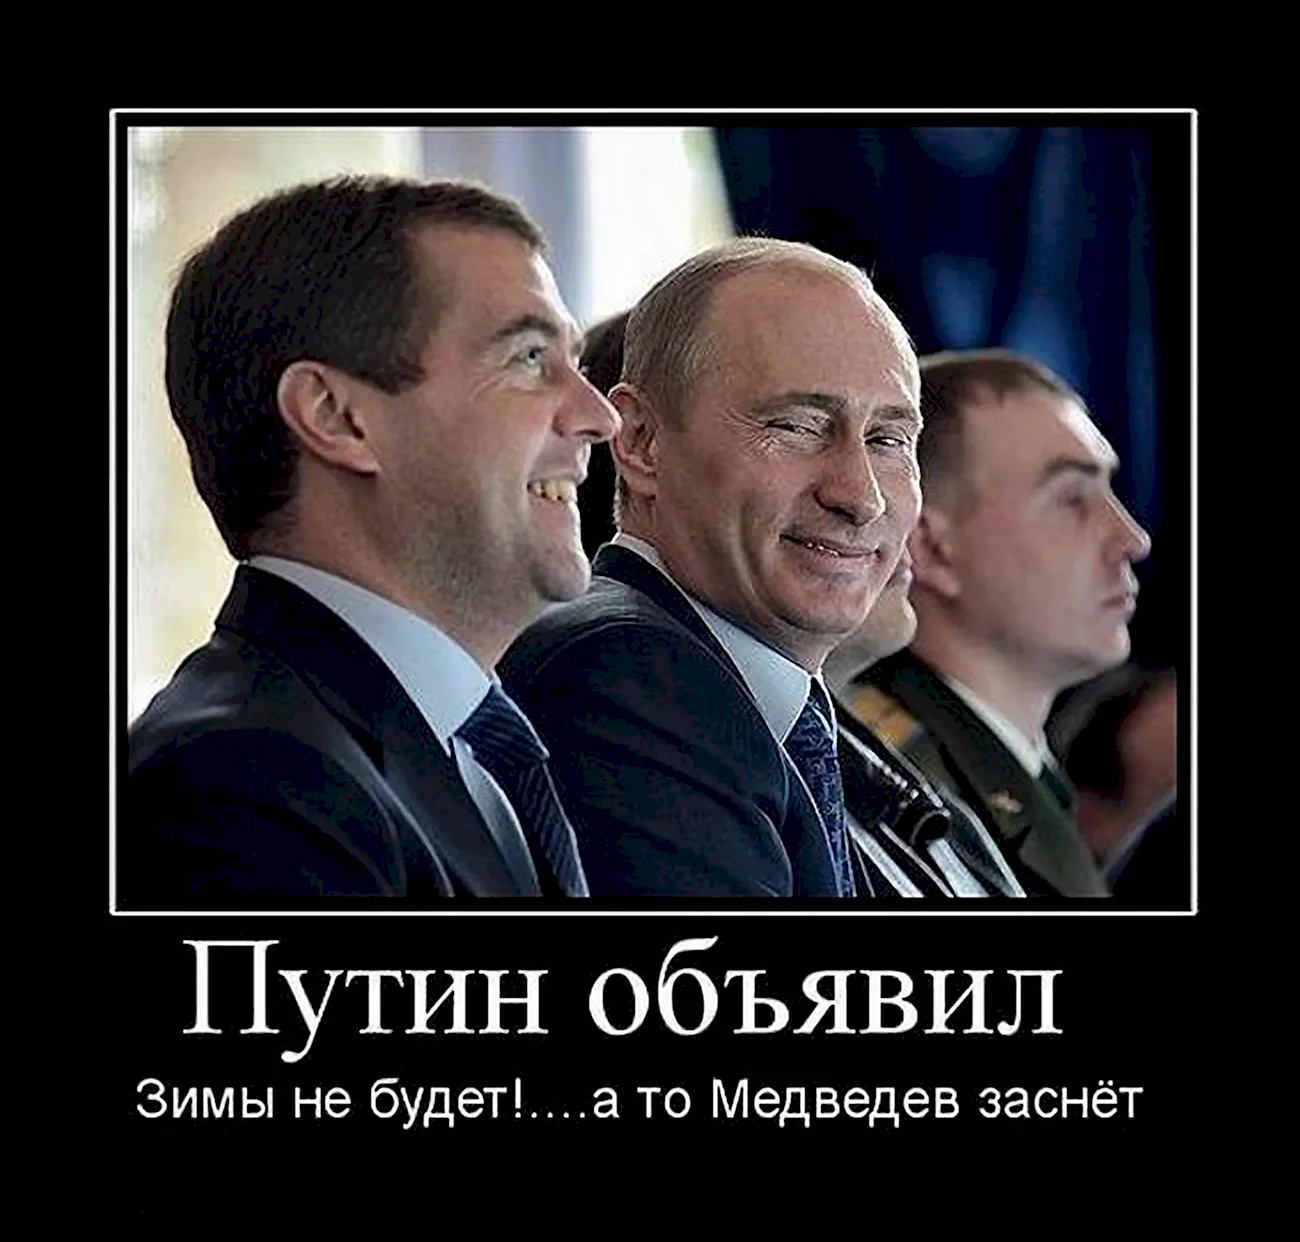 Путин демотиваторы. Картинка